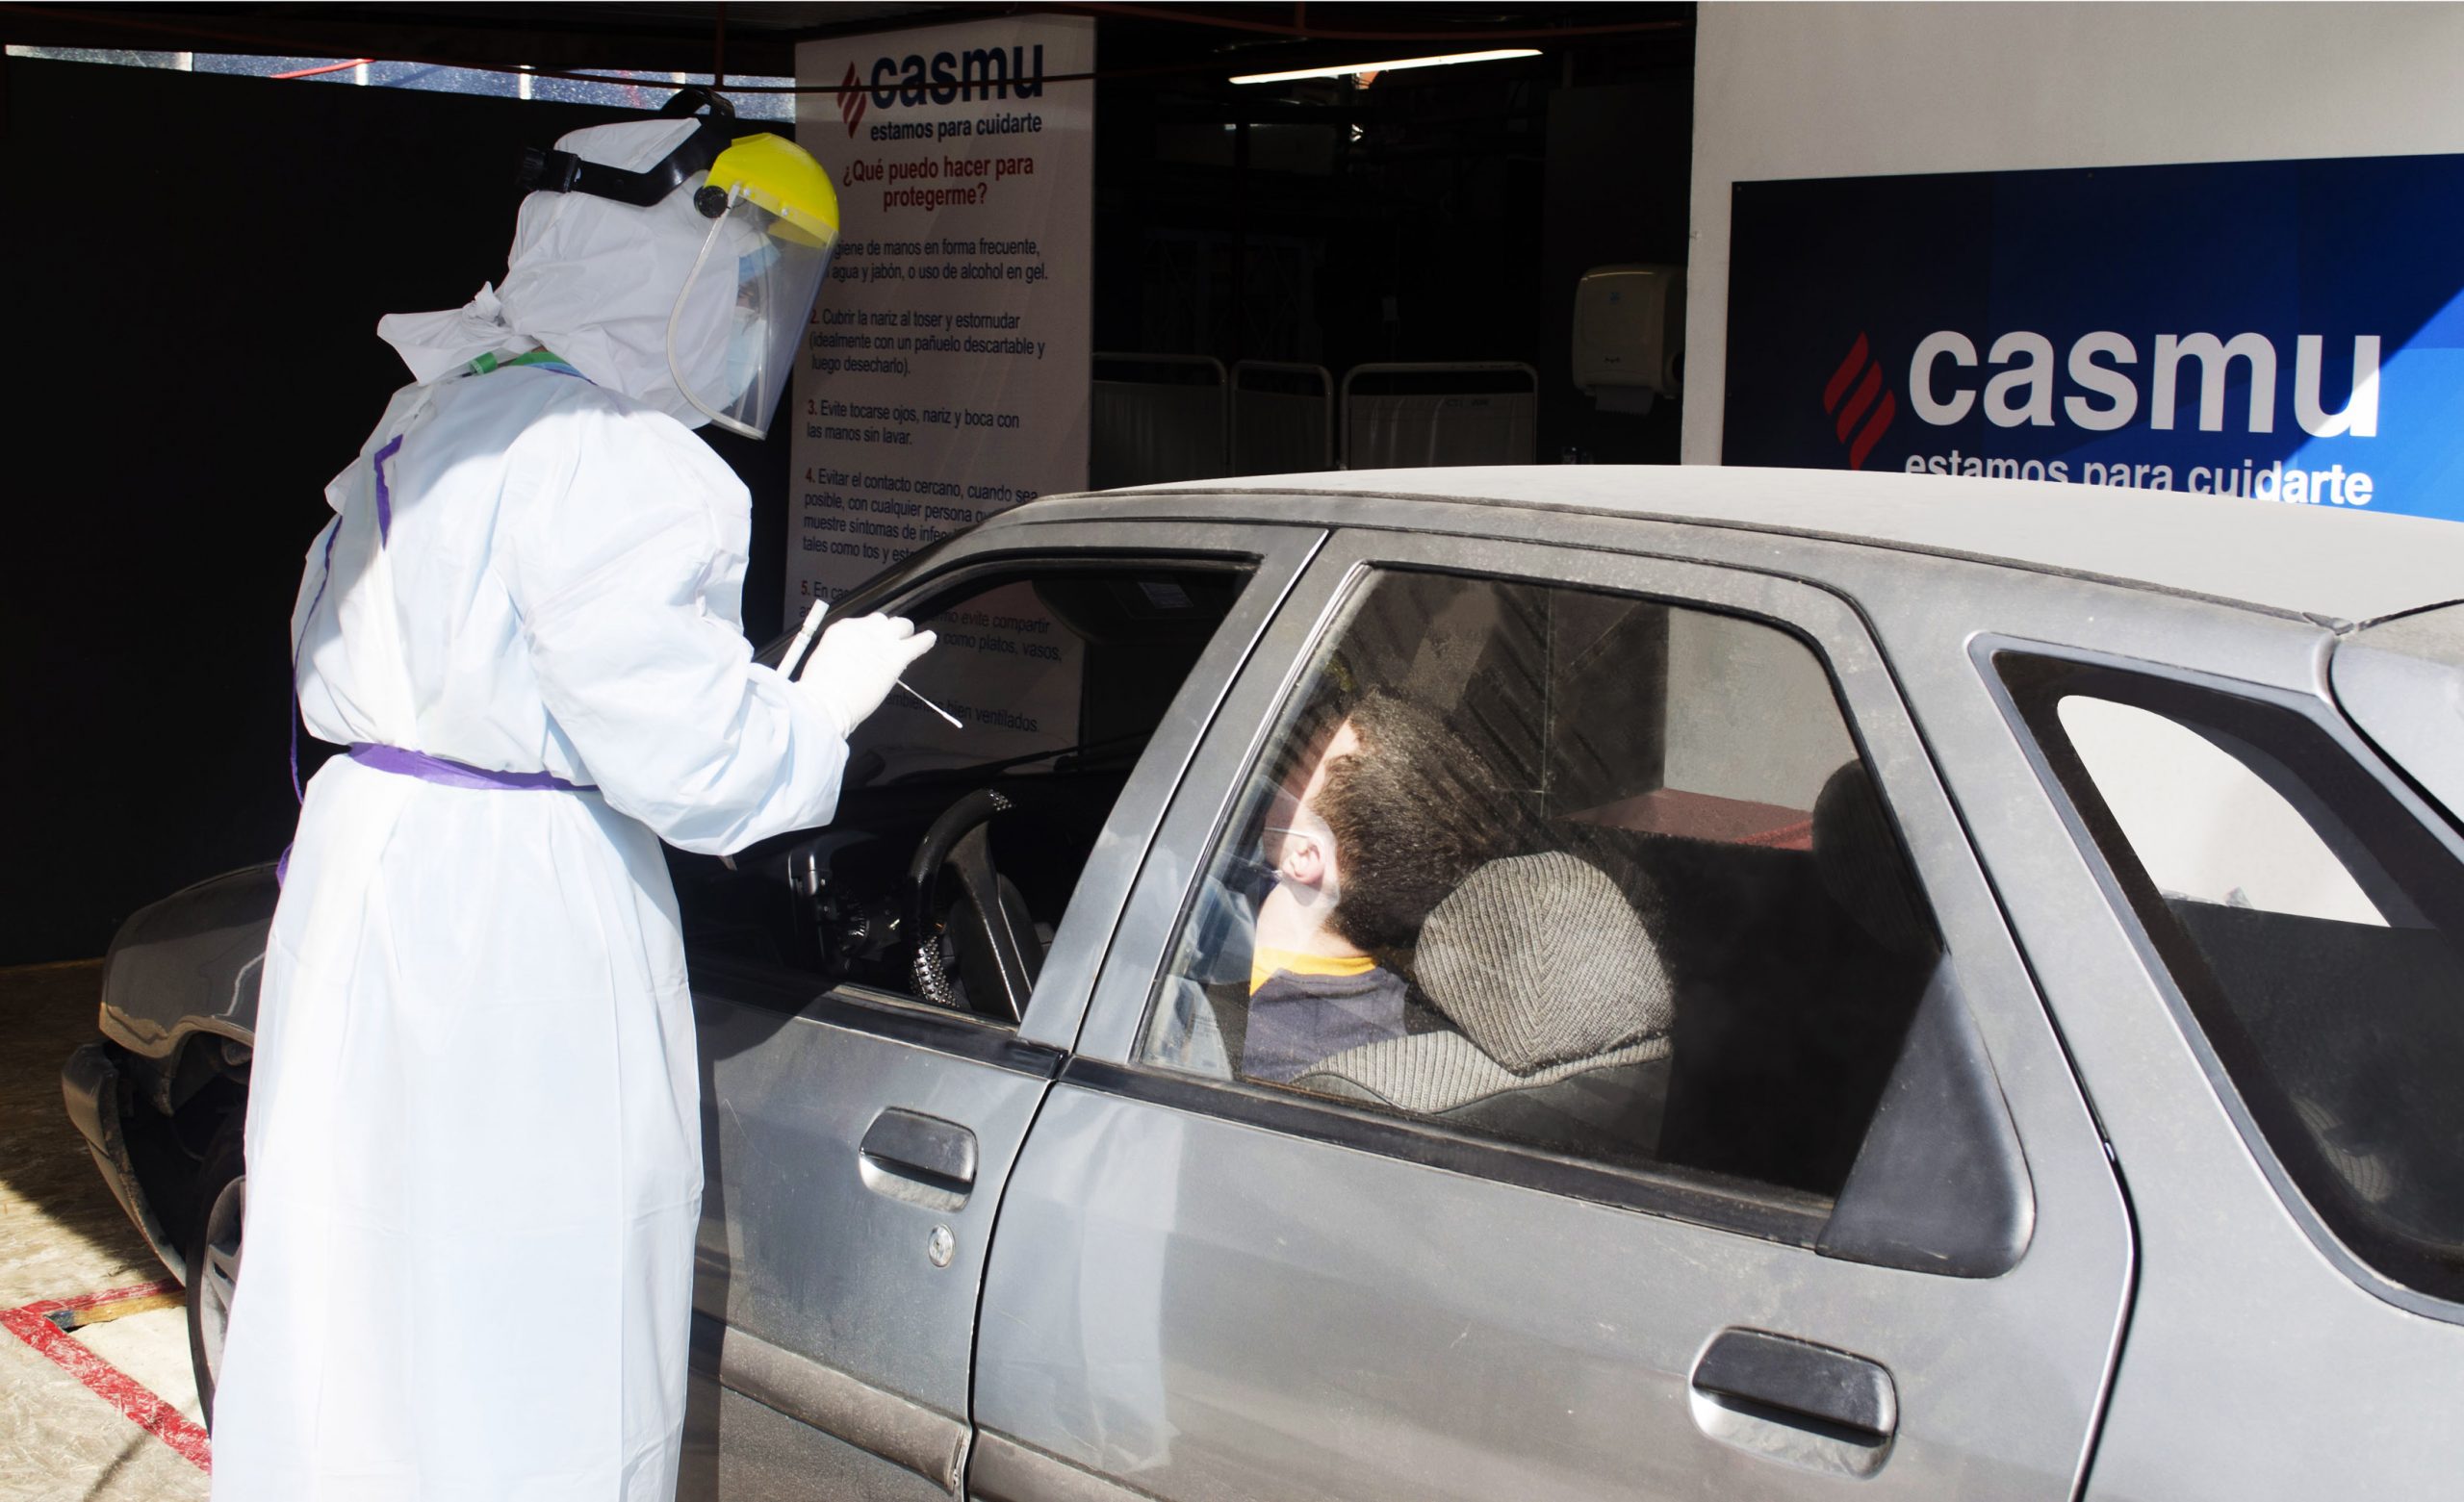 CASMU innova y lanzó “Hisoparking”, servicio para realizar el test de COVID-19 desde el automóvil